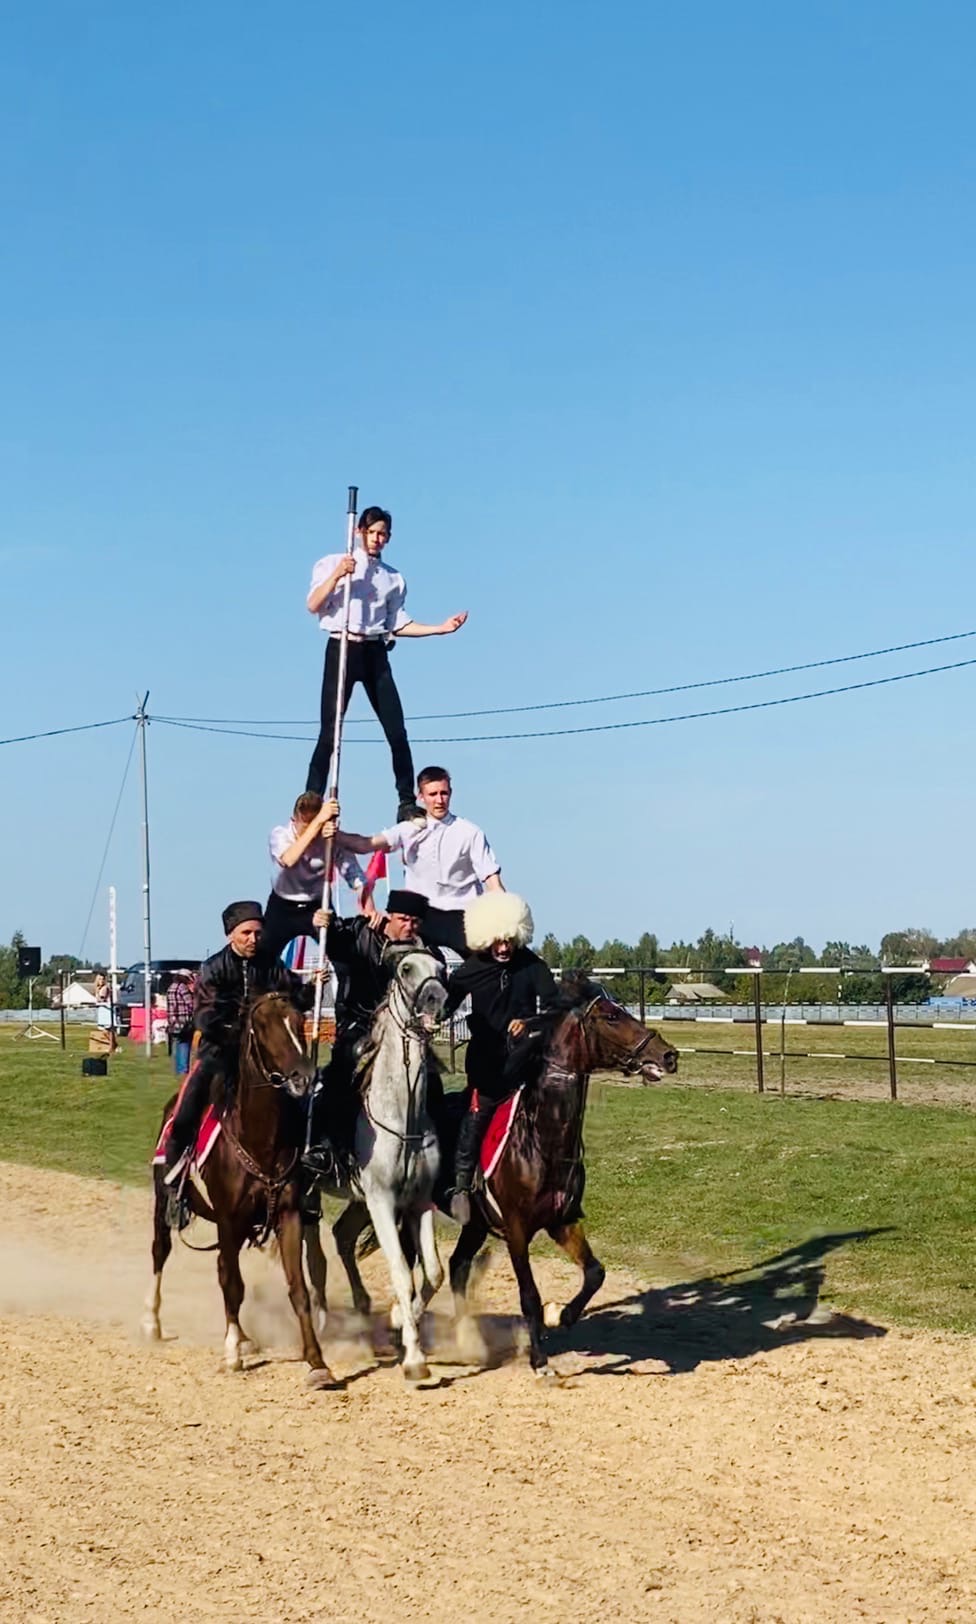 Конкур, скачки и русская тройка: в Брянской области отметили 125-летие Локотского конного завода